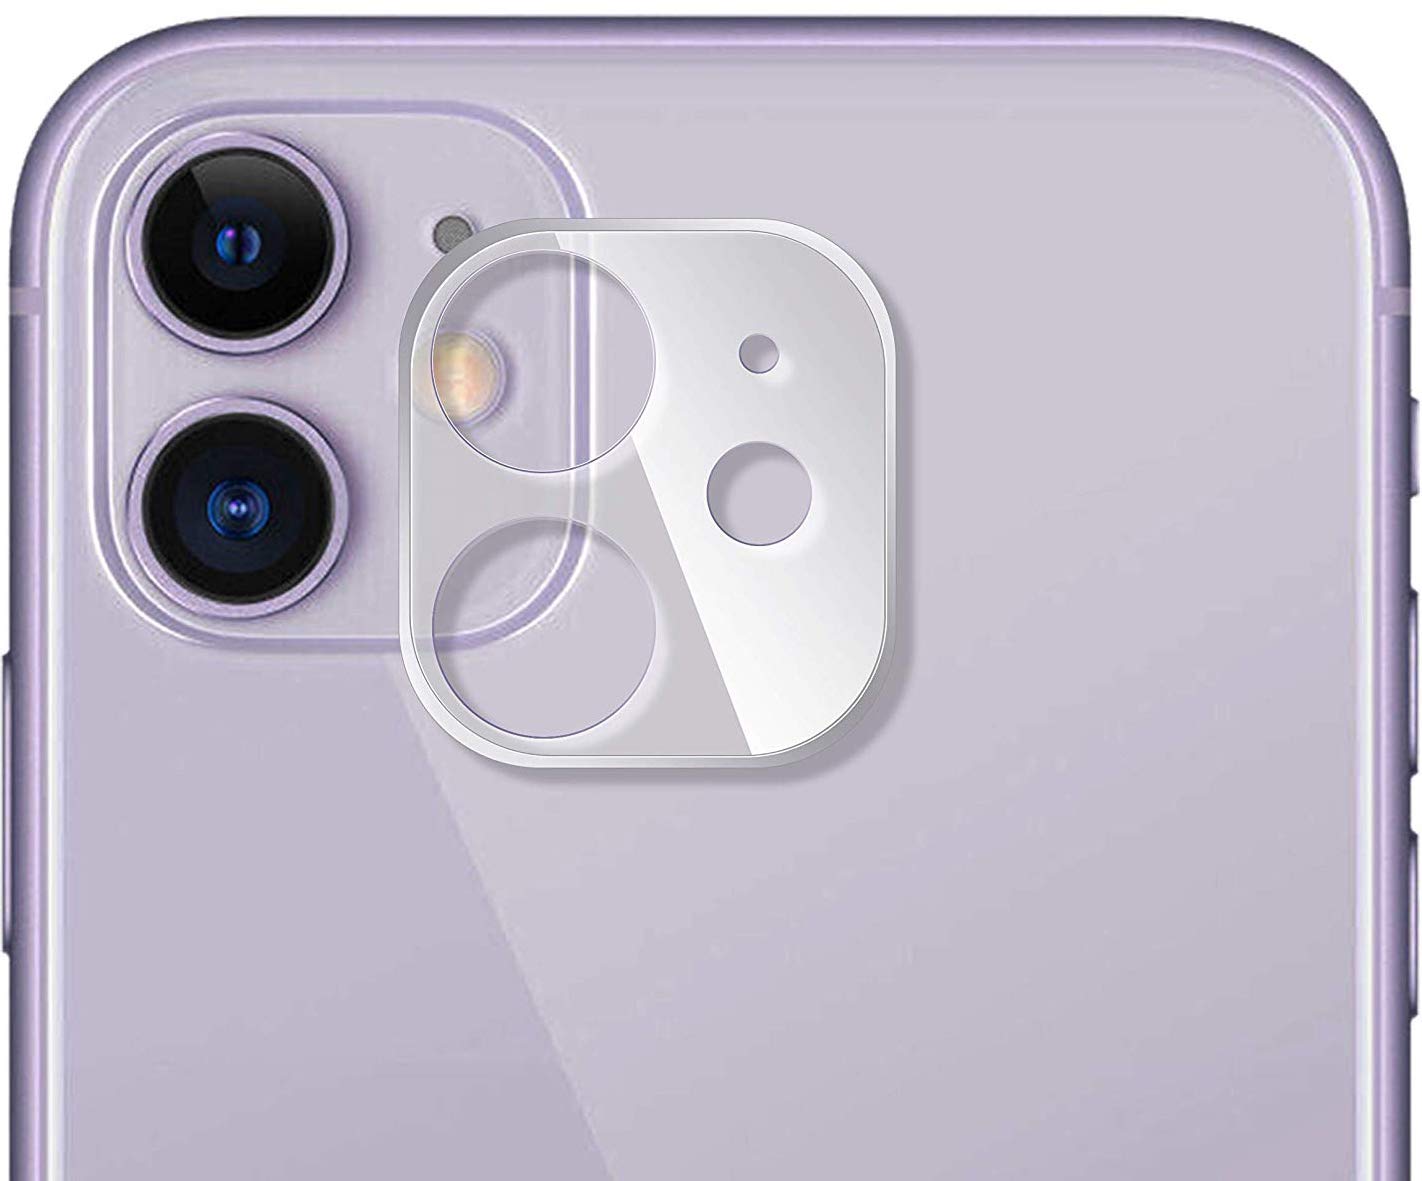 UniqueMe iPhone 11 Camera Cover